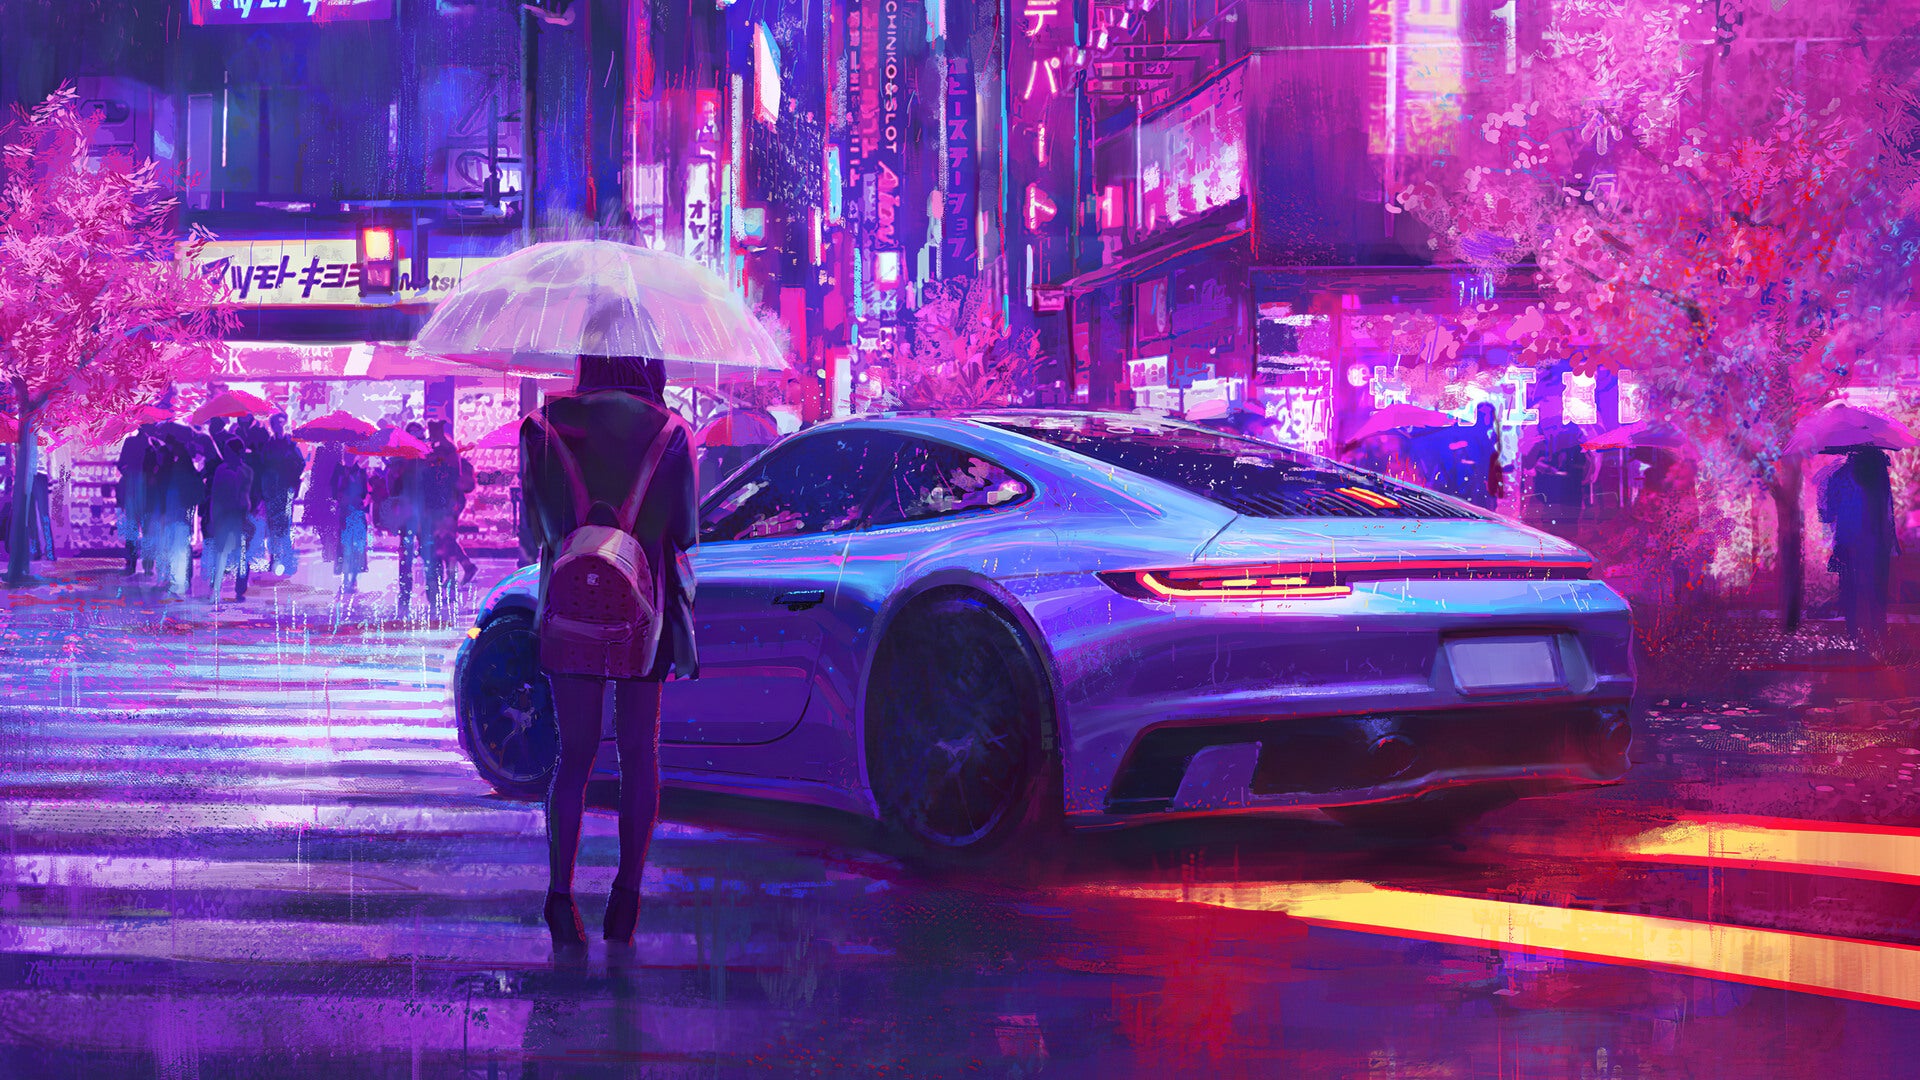 Download mobile wallpaper Porsche, Rain, Night, City, Neon, Sci Fi, Umbrella for free.